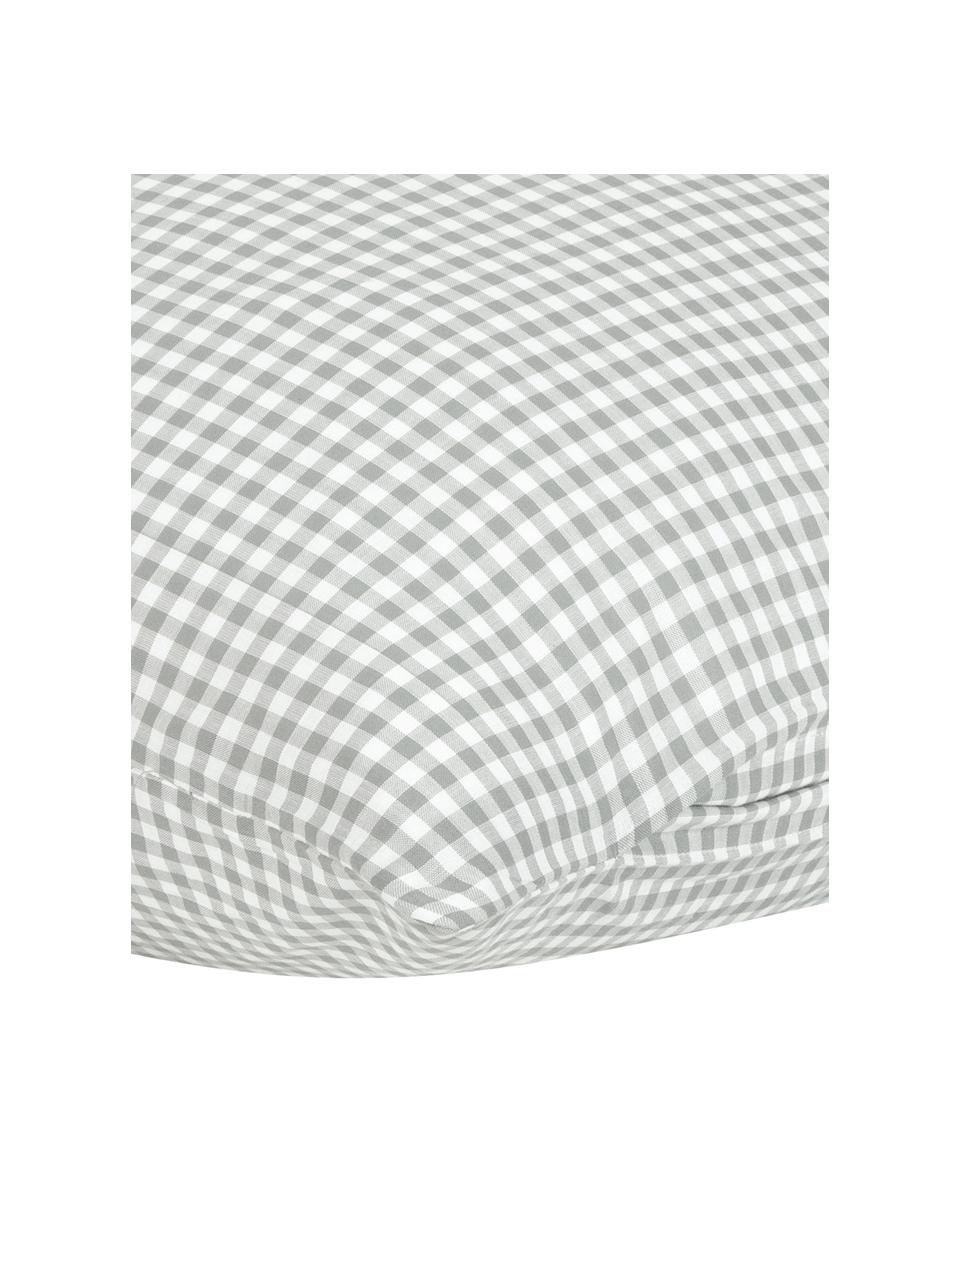 Karierte Baumwoll-Kopfkissenbezüge Scotty in Grau/Weiß, 2 Stück, 100% Baumwolle

Fadendichte 118 TC, Standard Qualität

Bettwäsche aus Baumwolle fühlt sich auf der Haut angenehm weich an, nimmt Feuchtigkeit gut auf und eignet sich für Allergiker, Hellgrau/Weiß, B 40 x L 80 cm